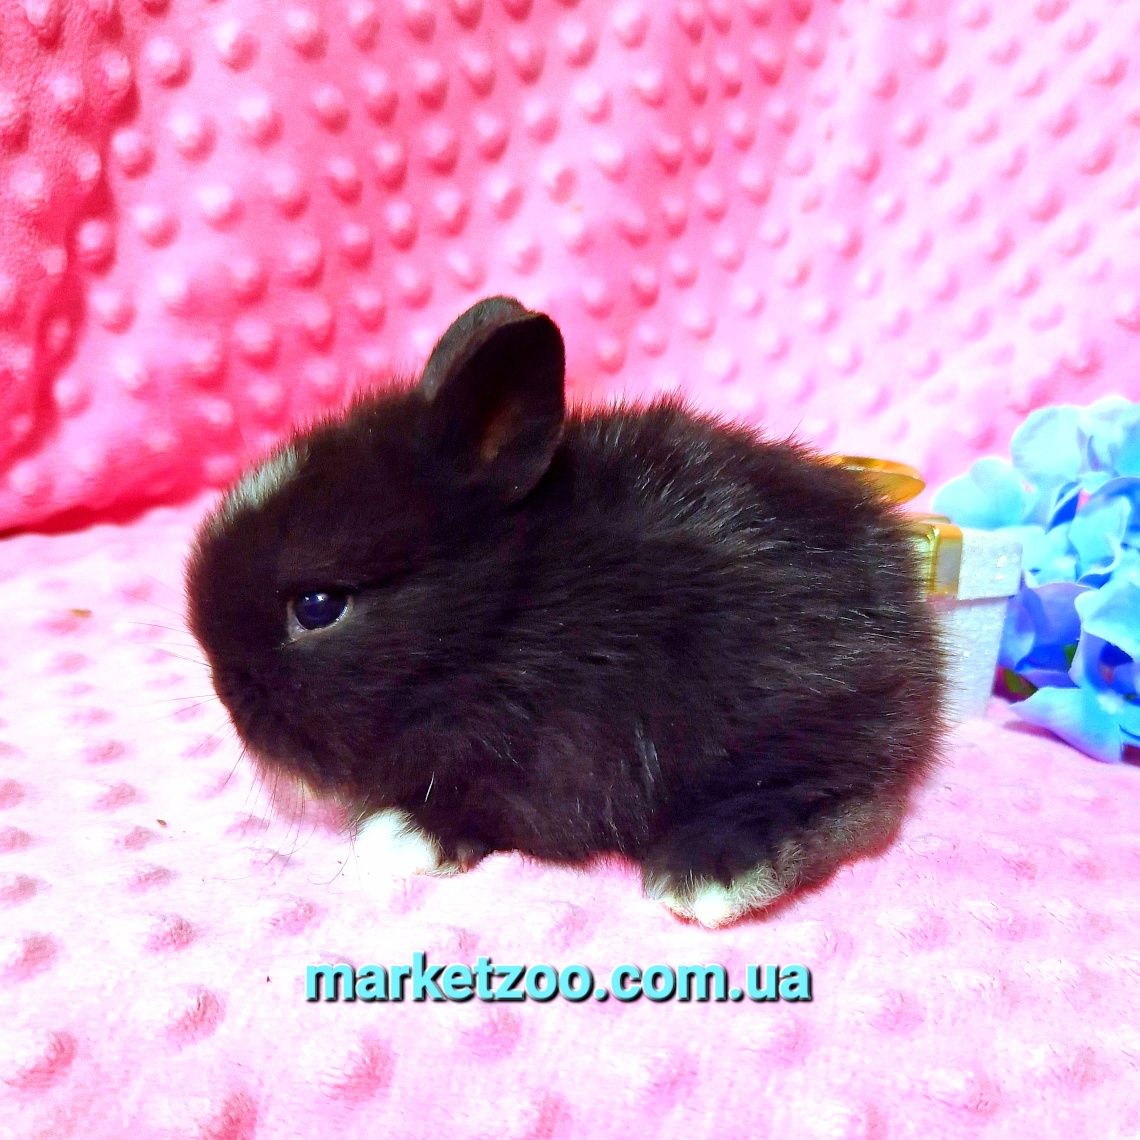 Нідерландський кролик-найменша порода кроликів,мініатюрний хлопчик!